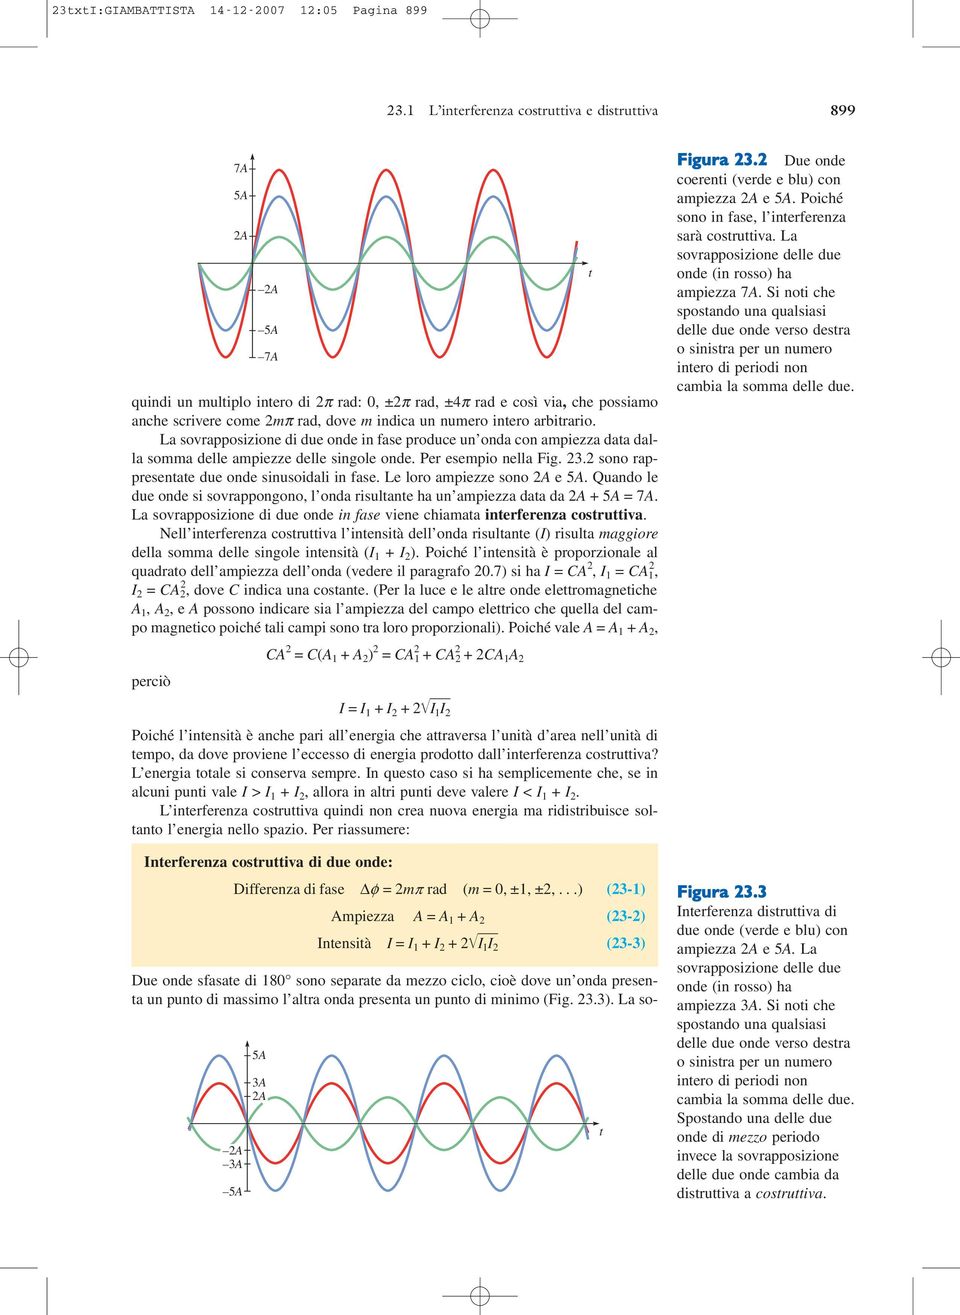 intero arbitrario. La sovrapposizione di due onde in fase produce un onda con ampiezza data dalla somma delle ampiezze delle singole onde. Per esempio nella Fig. 23.